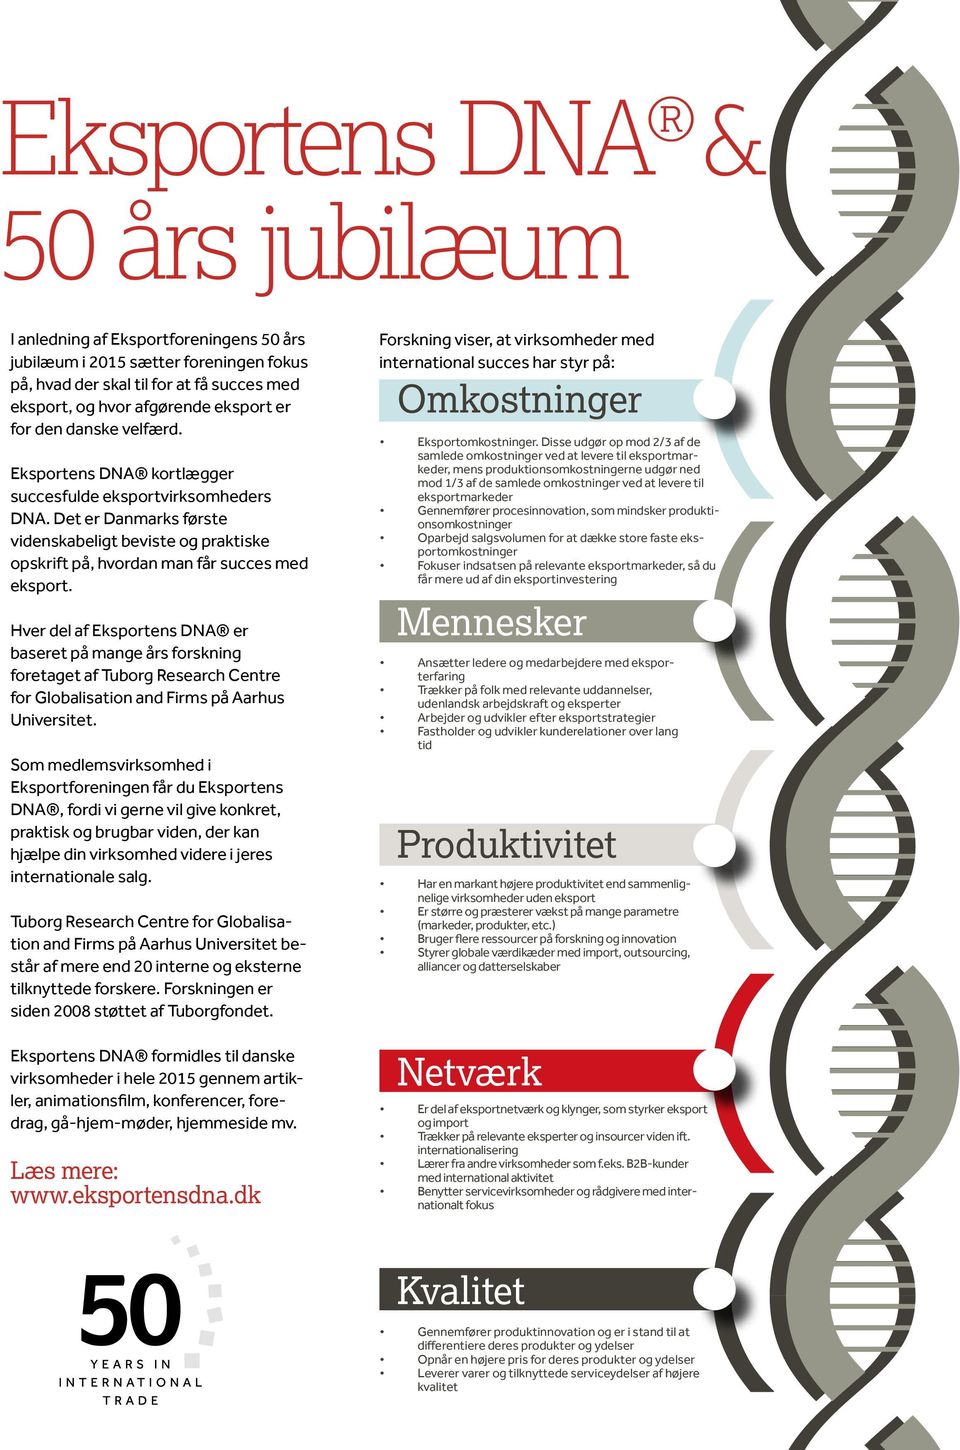 Hver del af Eksportens DNA er baseret på mange års forskning foretaget af Tuborg Research Centre for Globalisation and Firms på Aarhus Universitet.